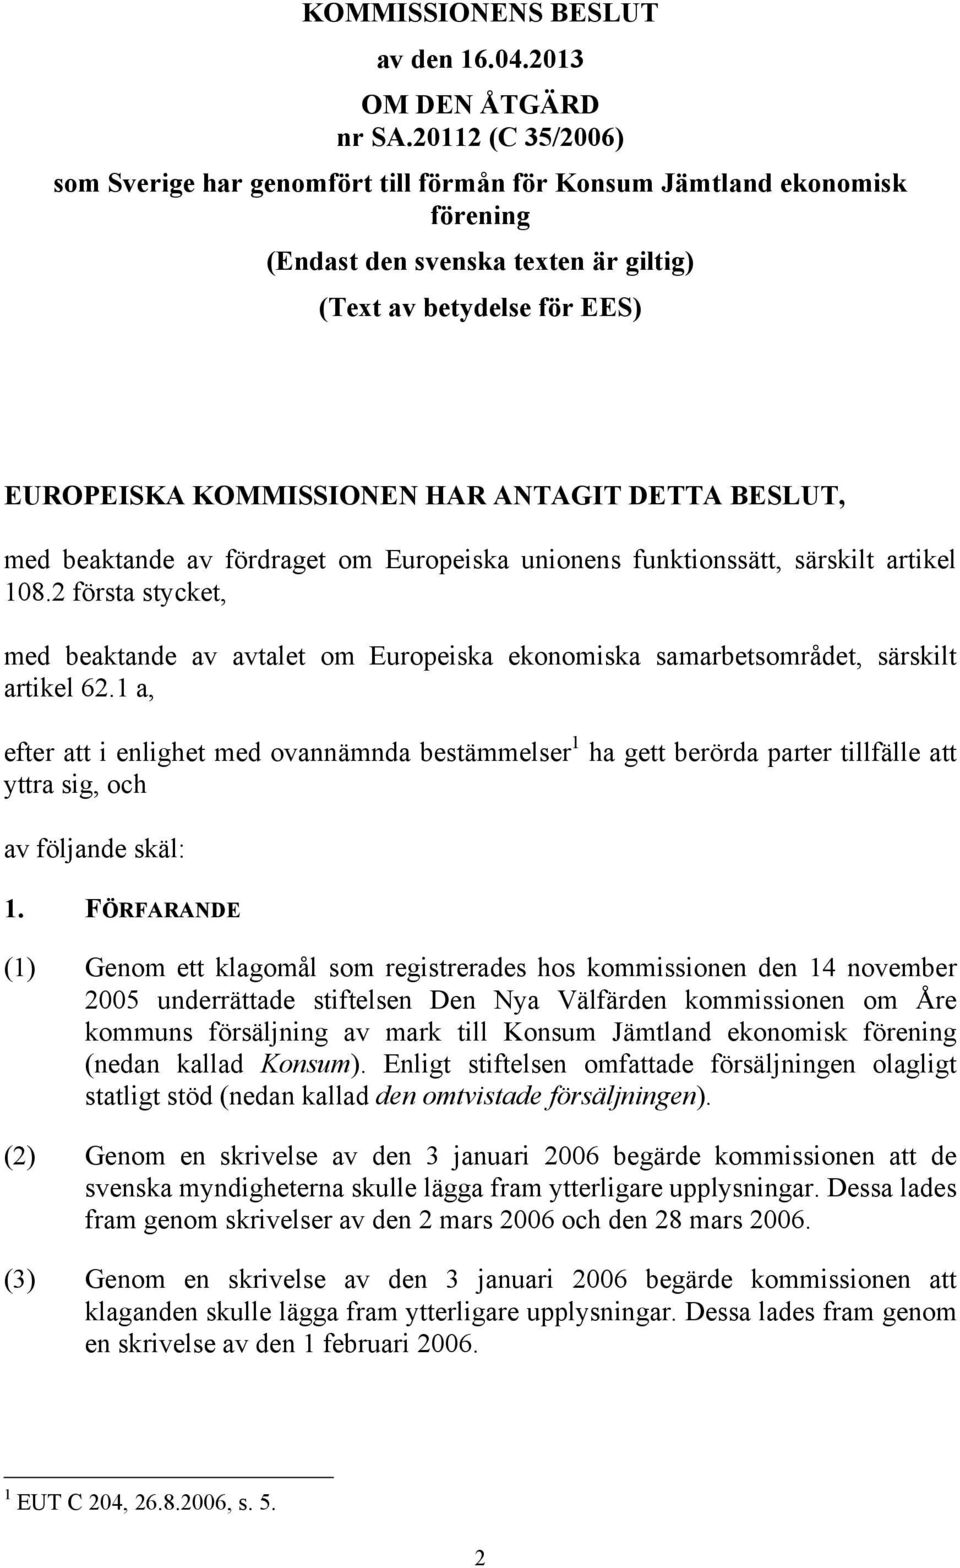 DETTA BESLUT, med beaktande av fördraget om Europeiska unionens funktionssätt, särskilt artikel 108.